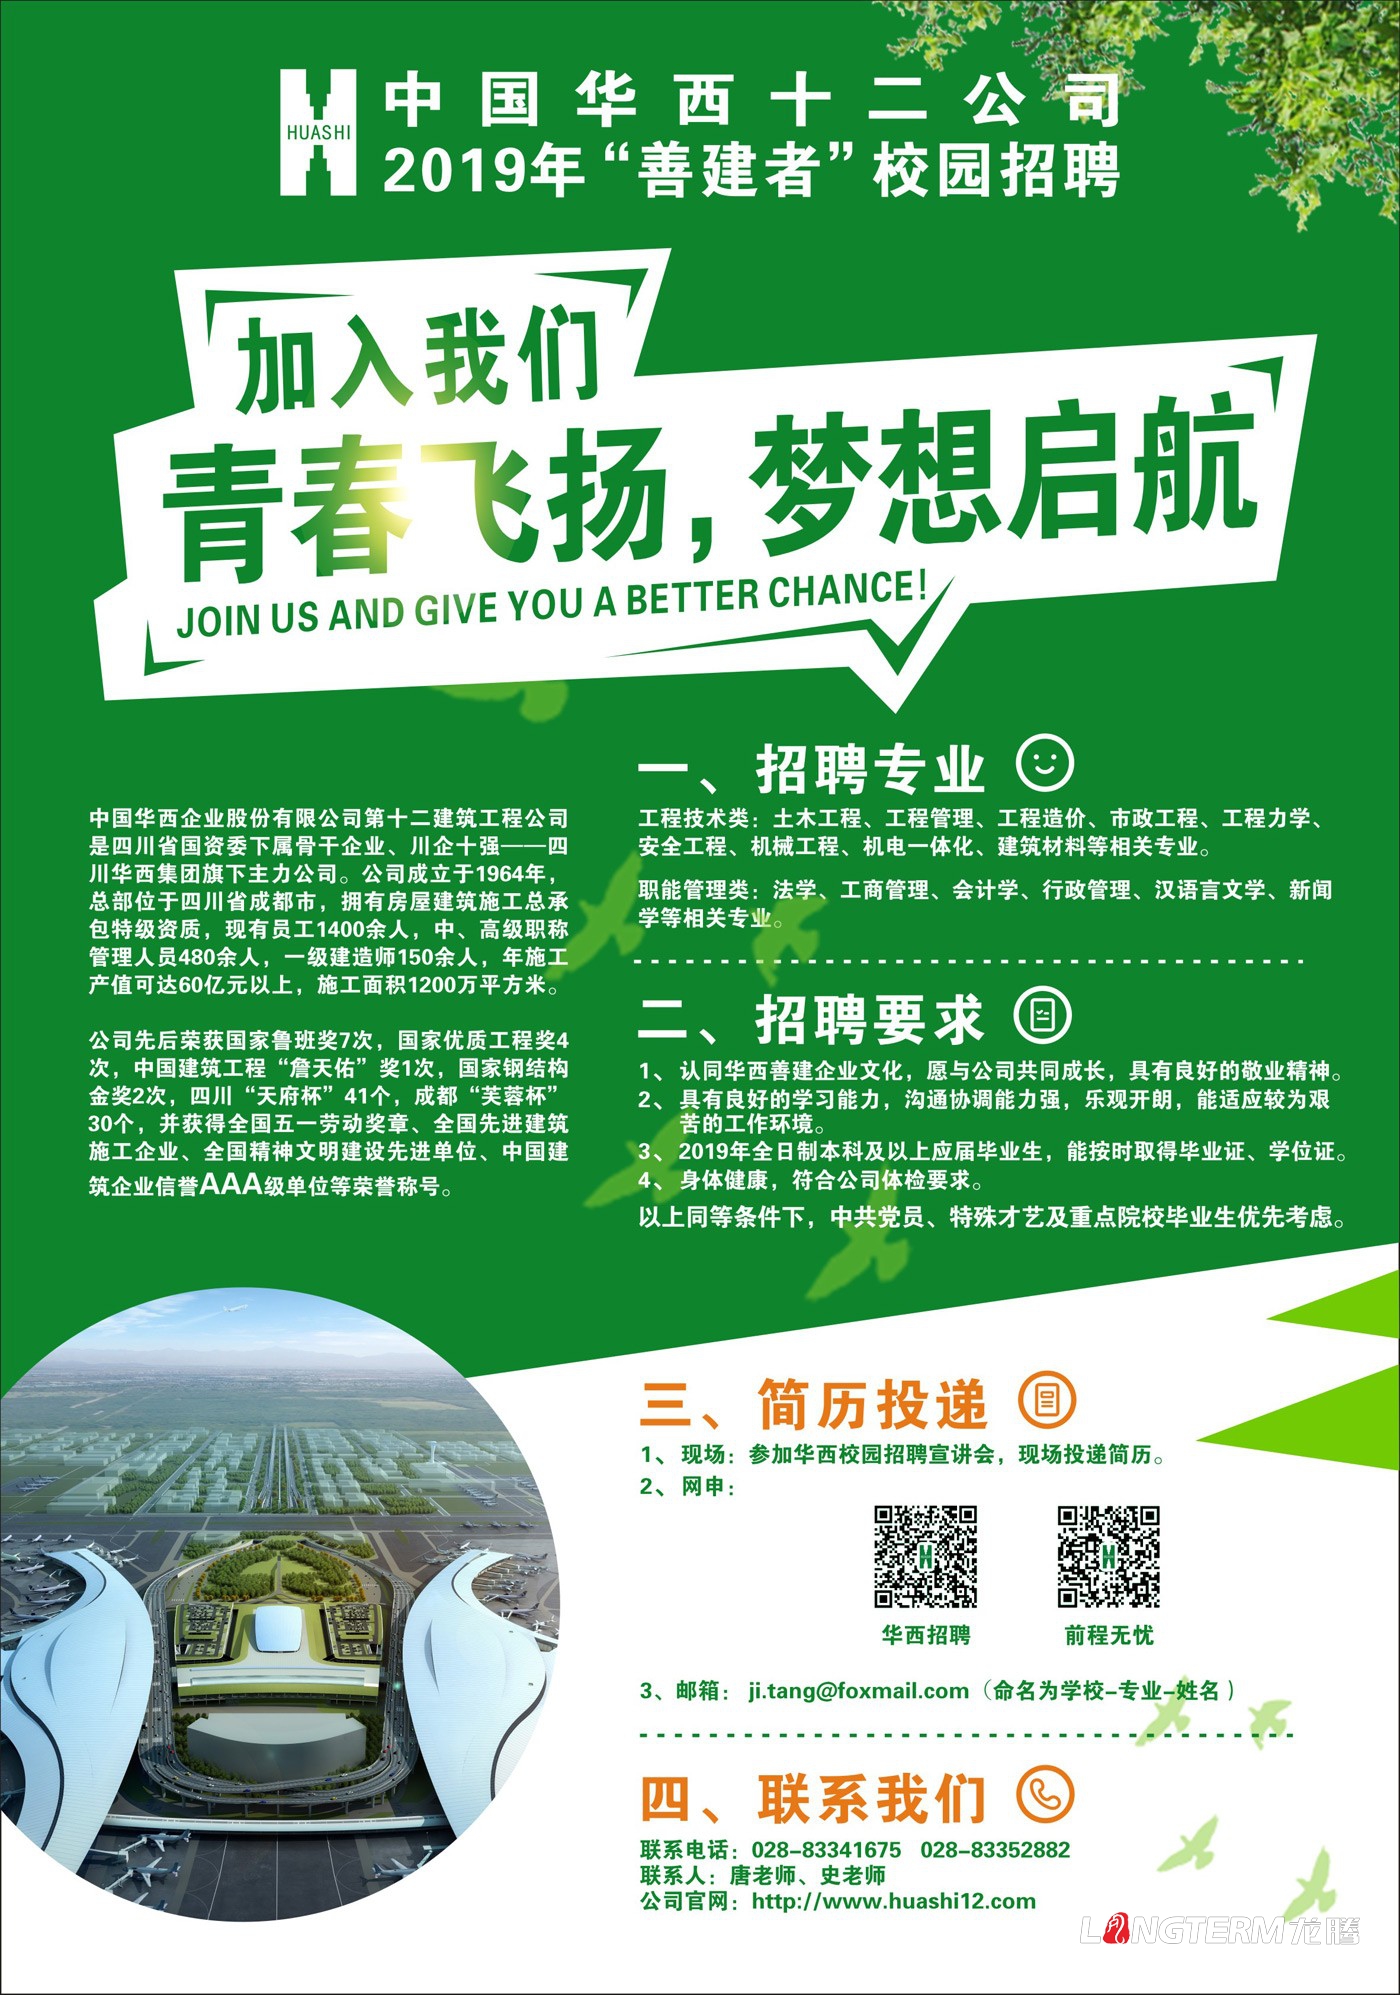 中國華西十二公司校園招聘海報設計